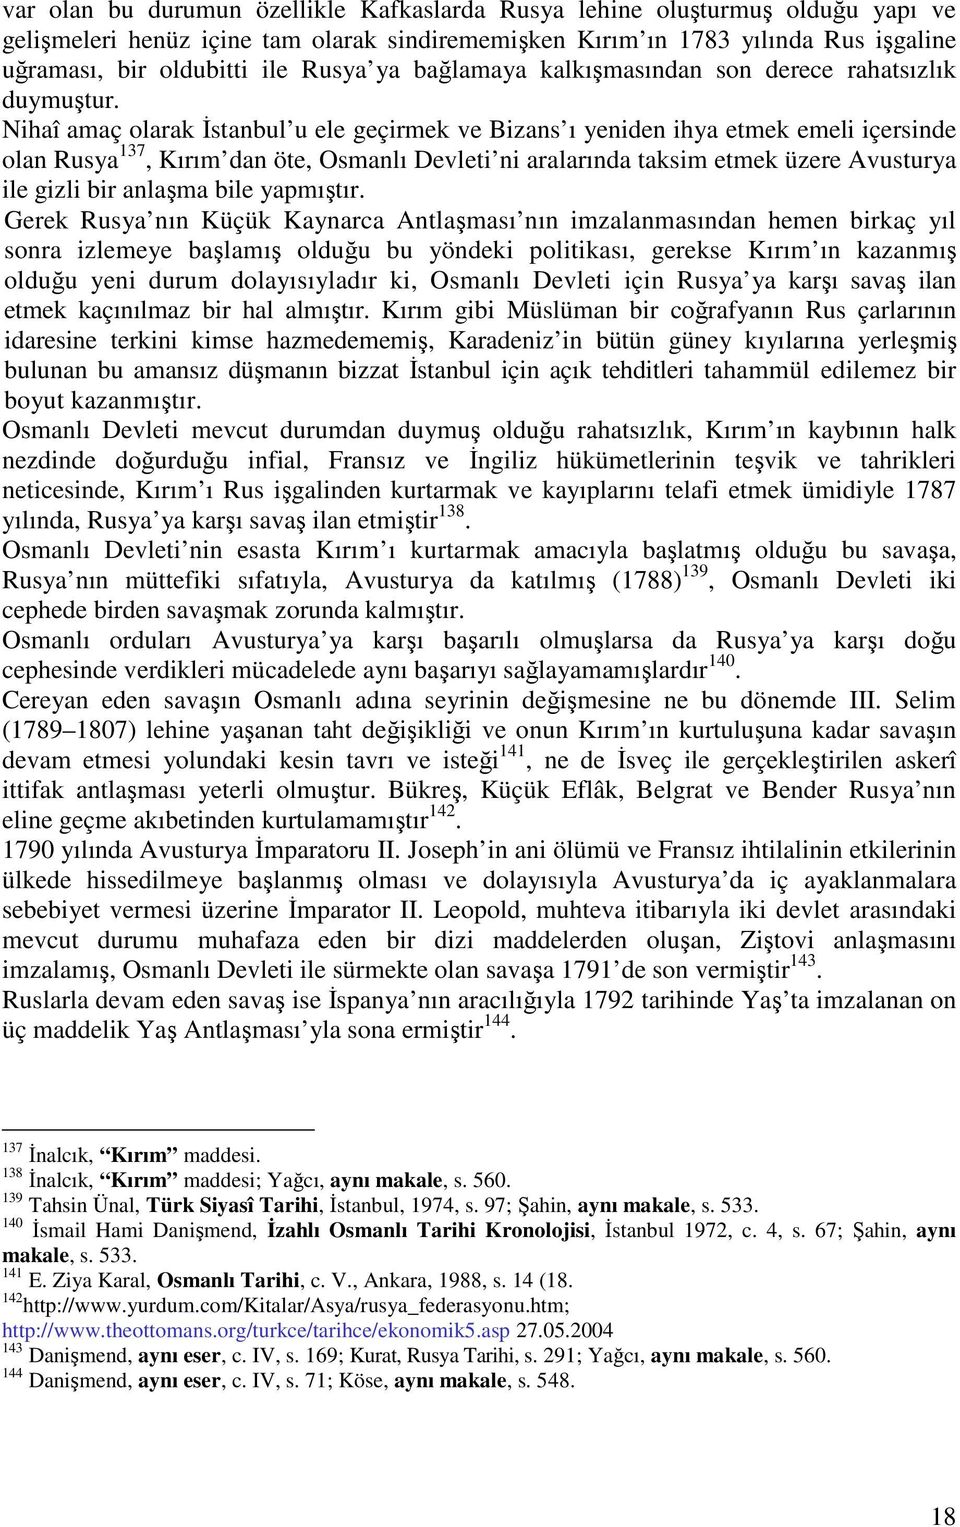 Nihaî amaç olarak stanbul u ele geçirmek ve Bizans ı yeniden ihya etmek emeli içersinde olan Rusya 137, Kırım dan öte, Osmanlı Devleti ni aralarında taksim etmek üzere Avusturya ile gizli bir anlama